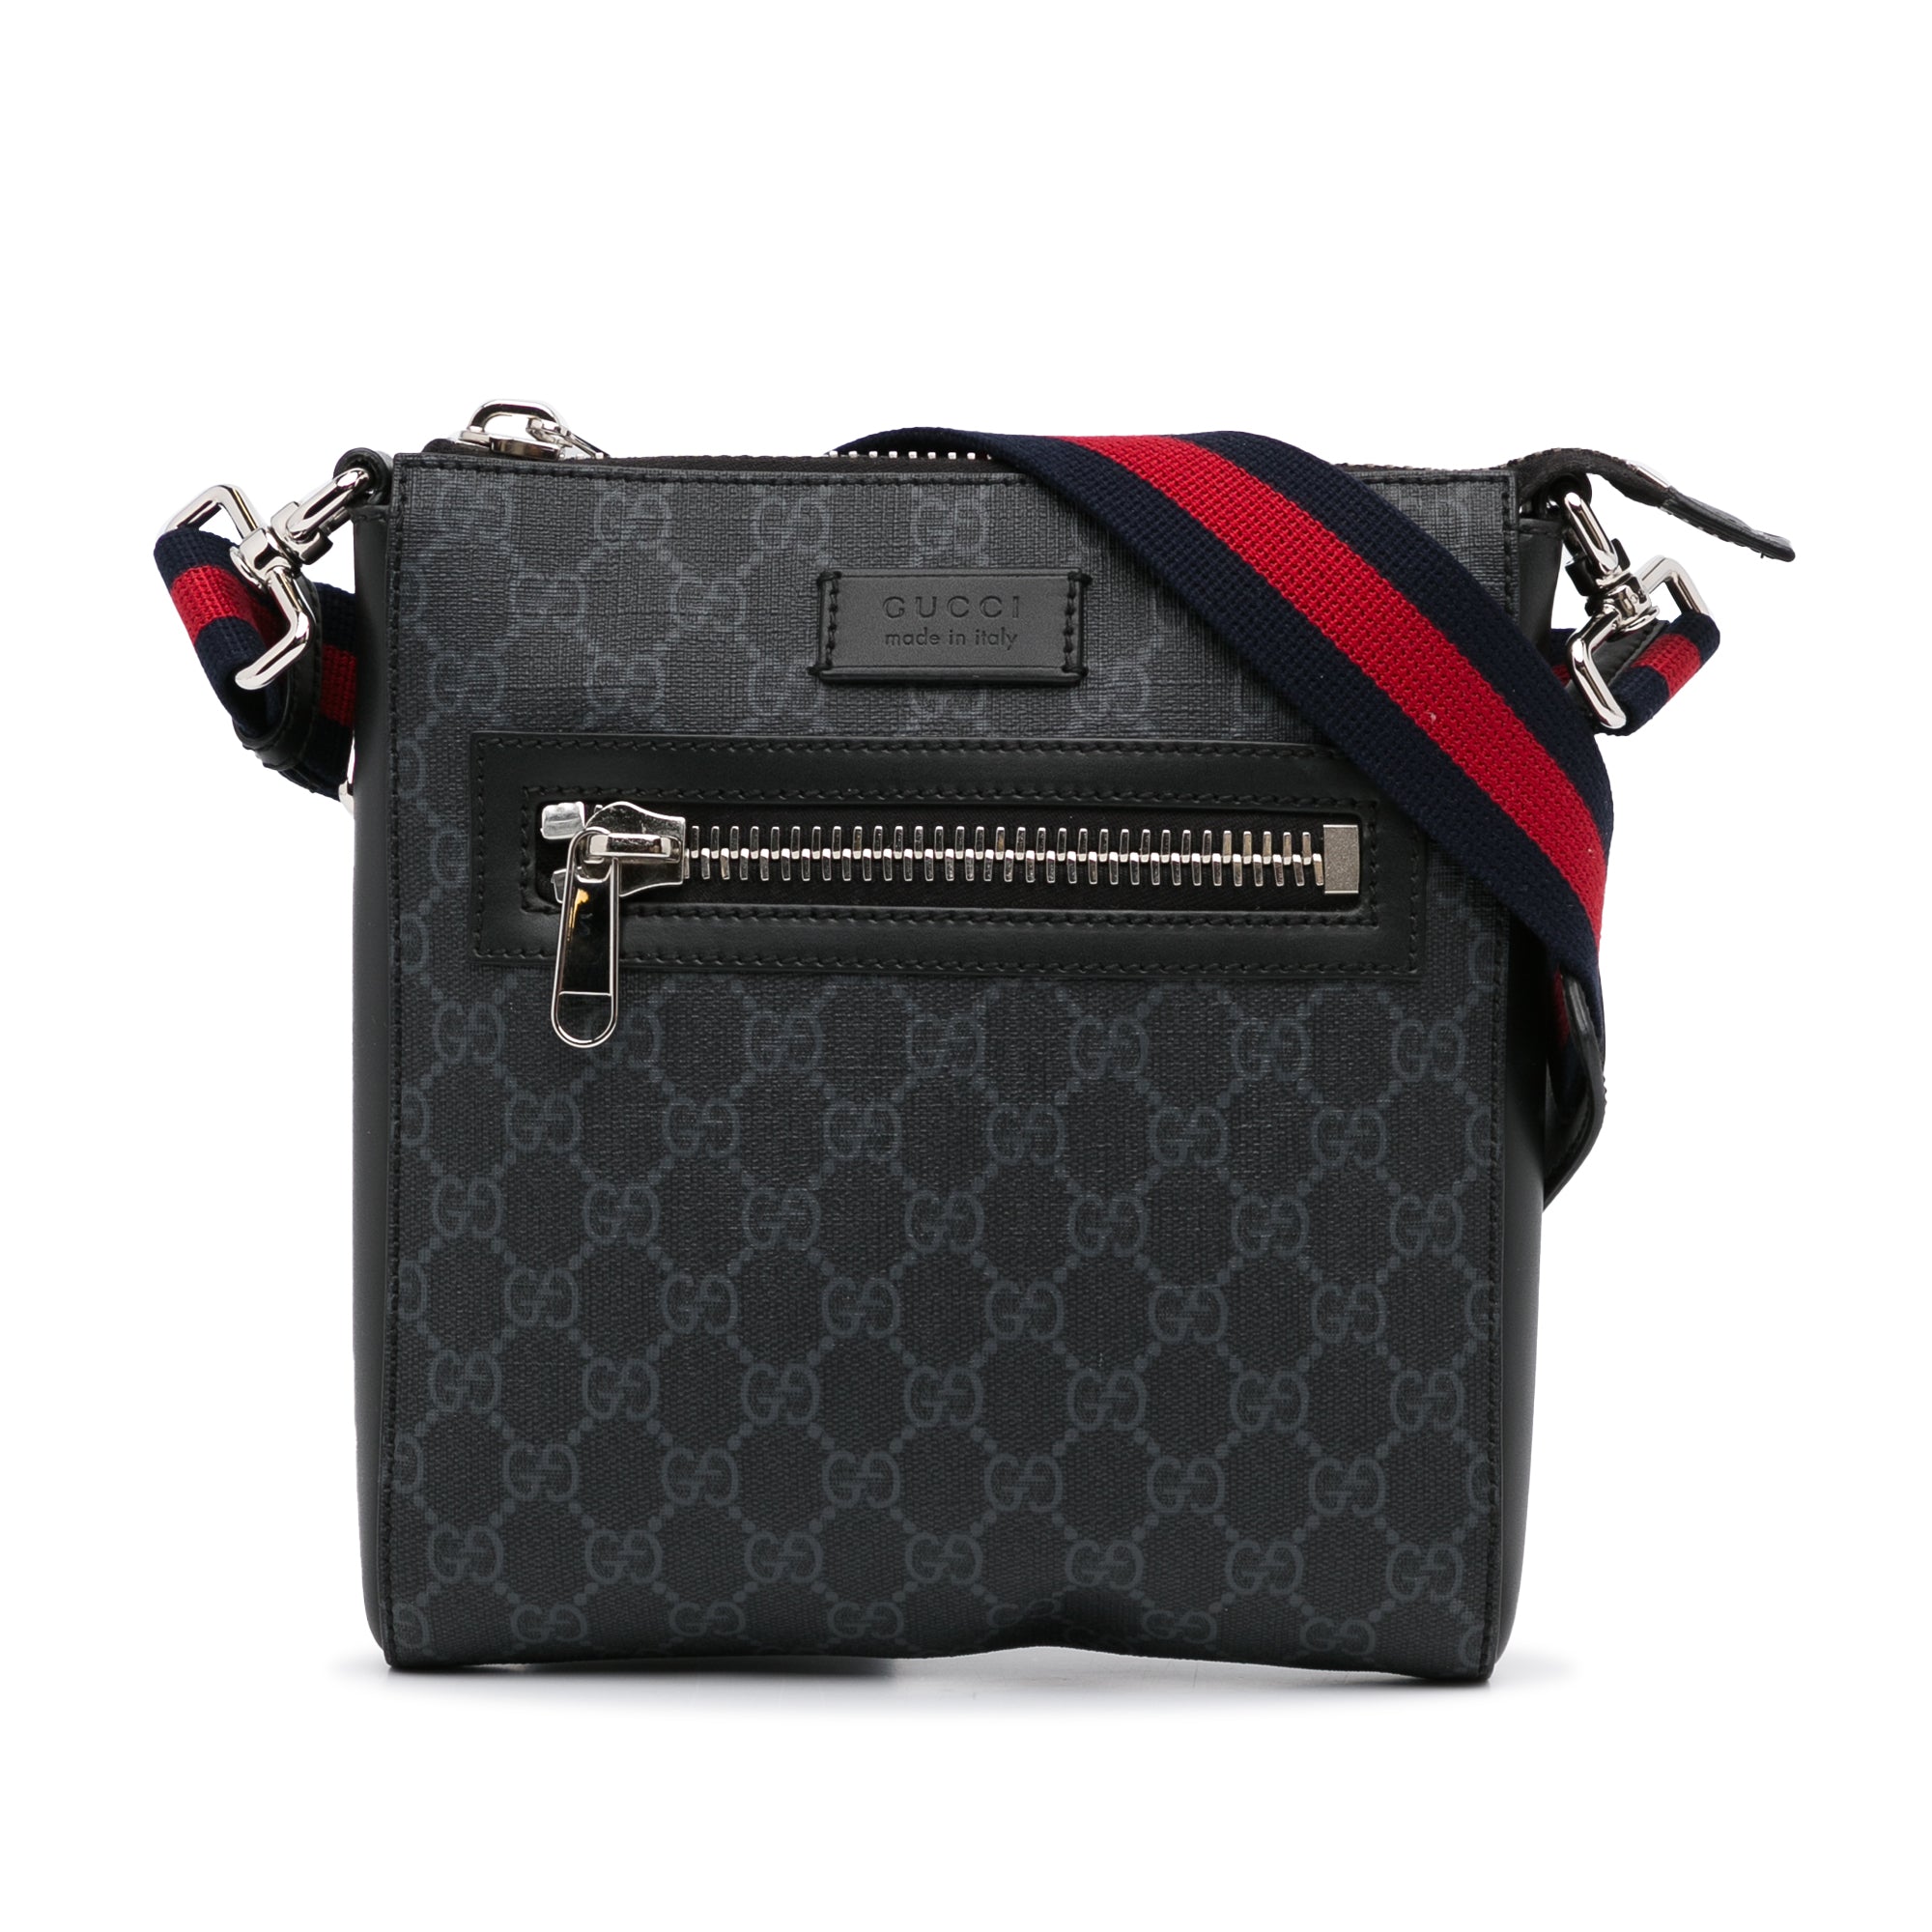 Gucci GG Supreme Small Side Bag Black